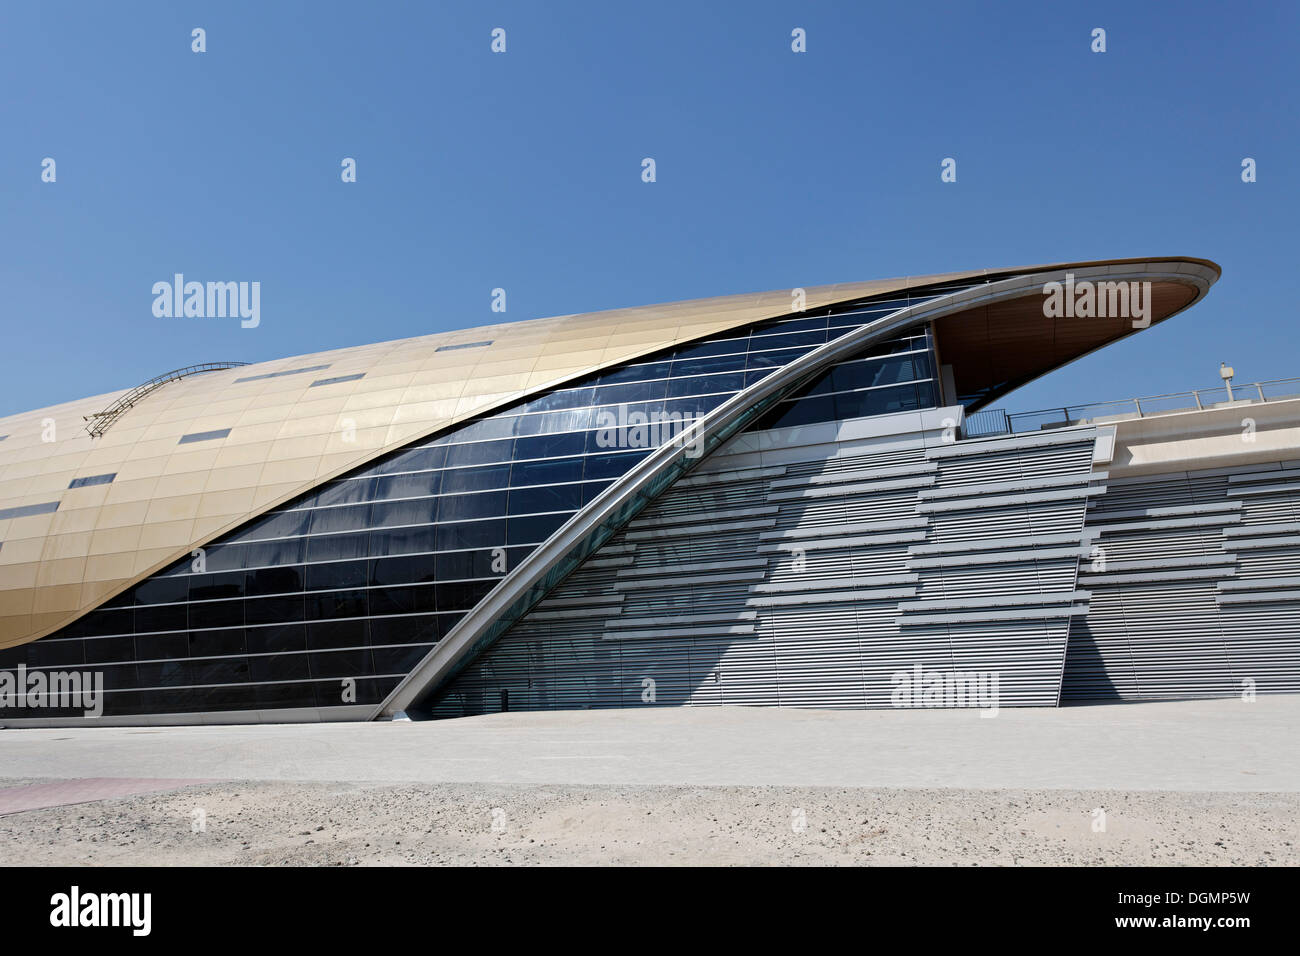 La stazione della metropolitana, architettura futuristica, Dubai, Emirati Arabi Uniti, Medio Oriente e Asia Foto Stock